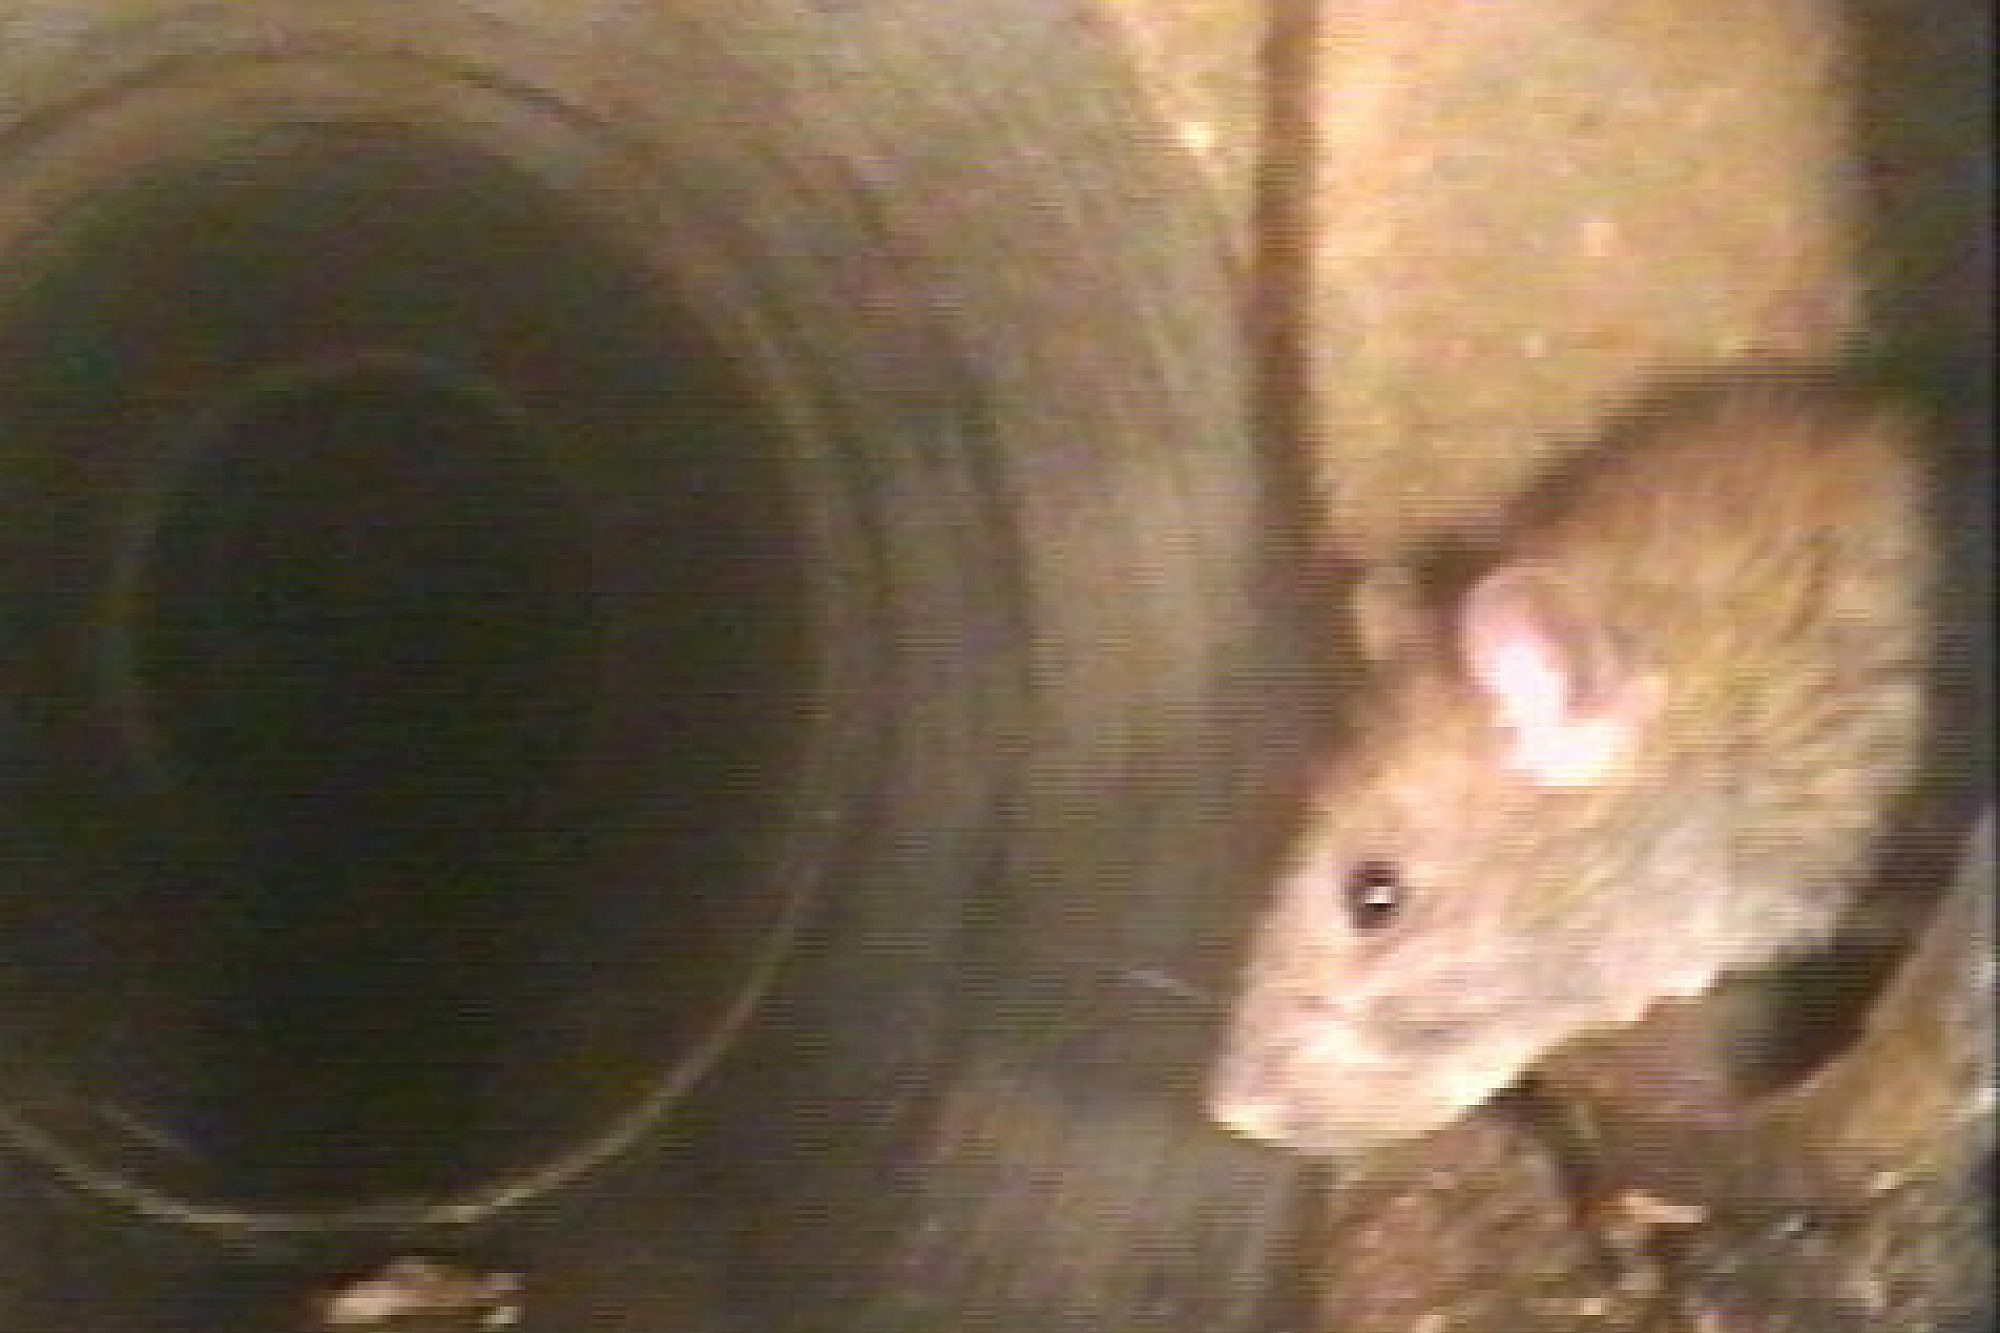 Die Aufnahme zeigt den Blick in ein Kanalrohr mitsamt einer Ratte.